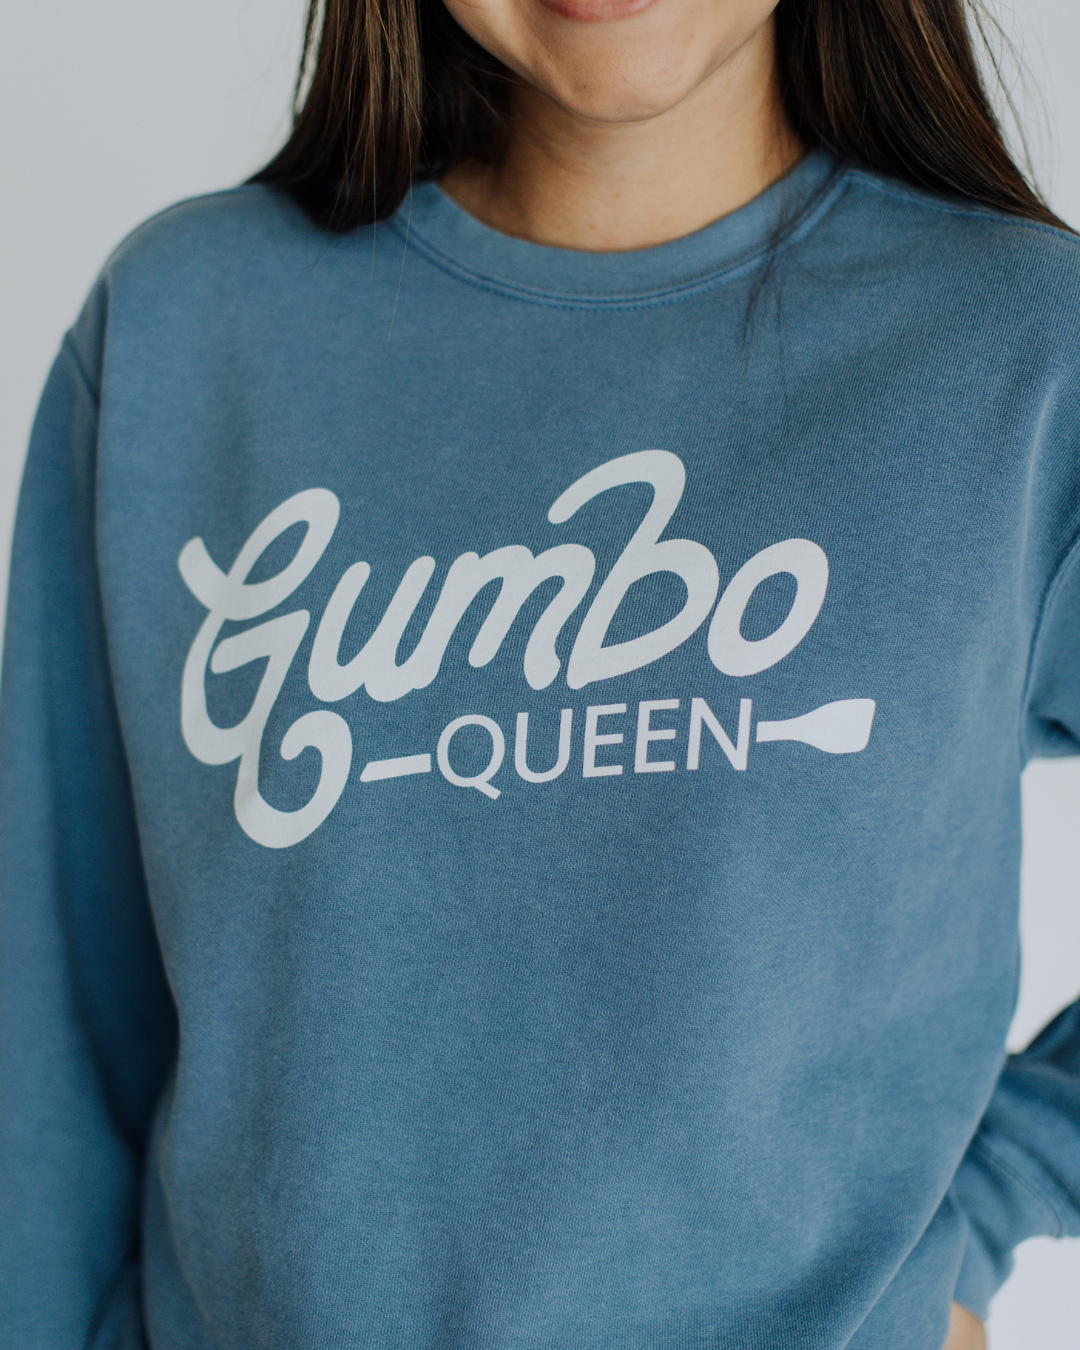 Gumbo Queen Sweatshirt